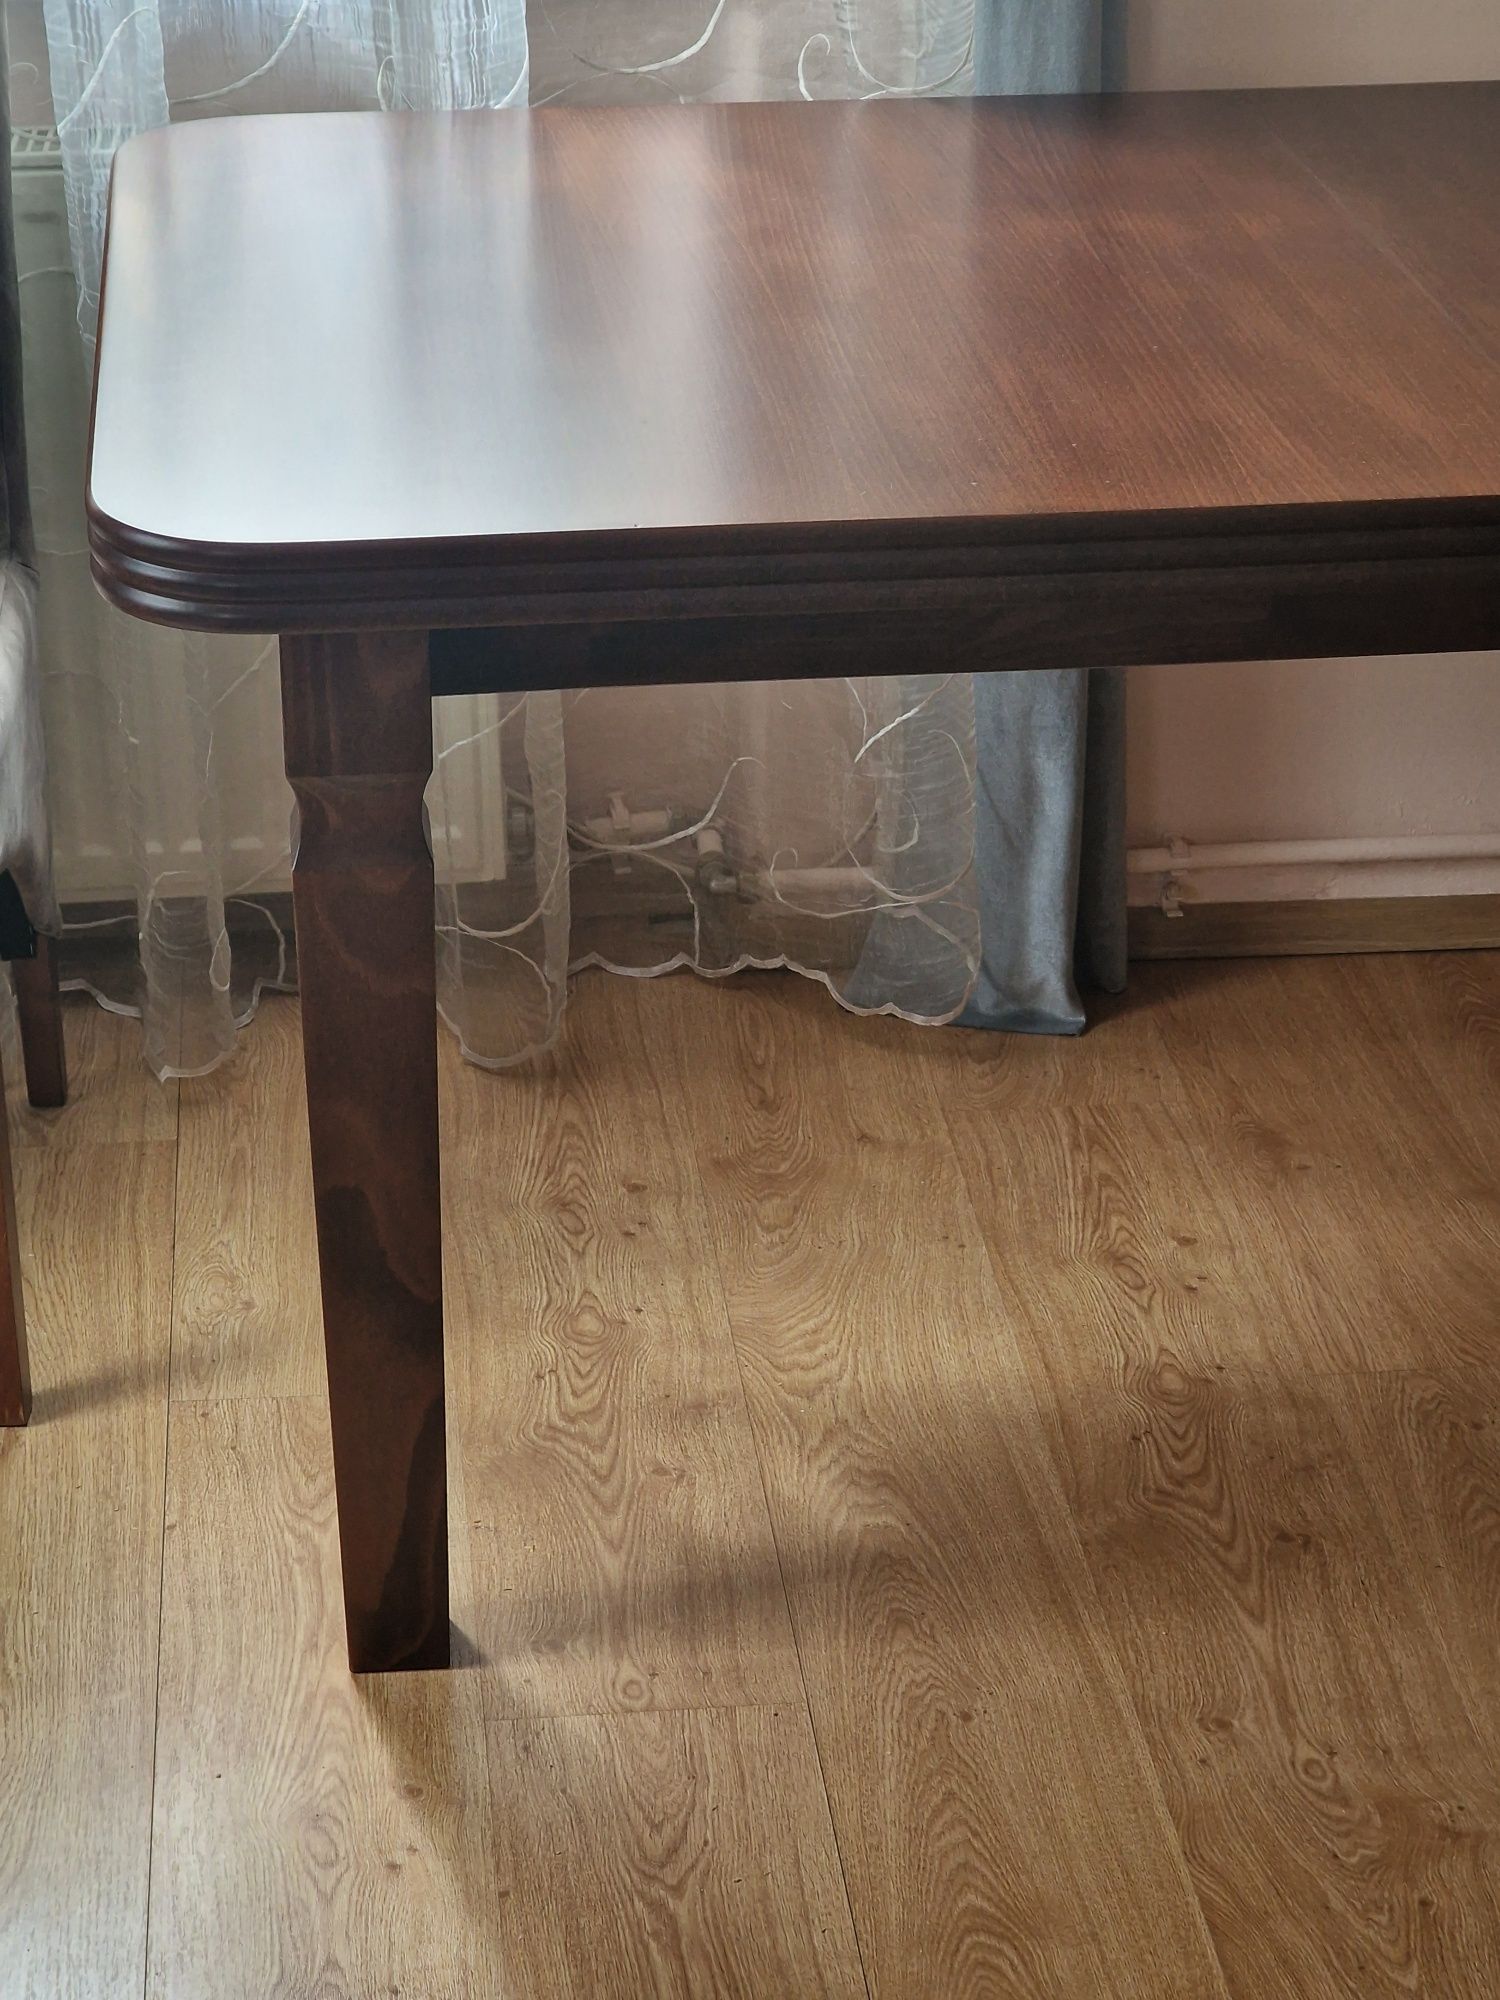 Stół do salonu drewniany